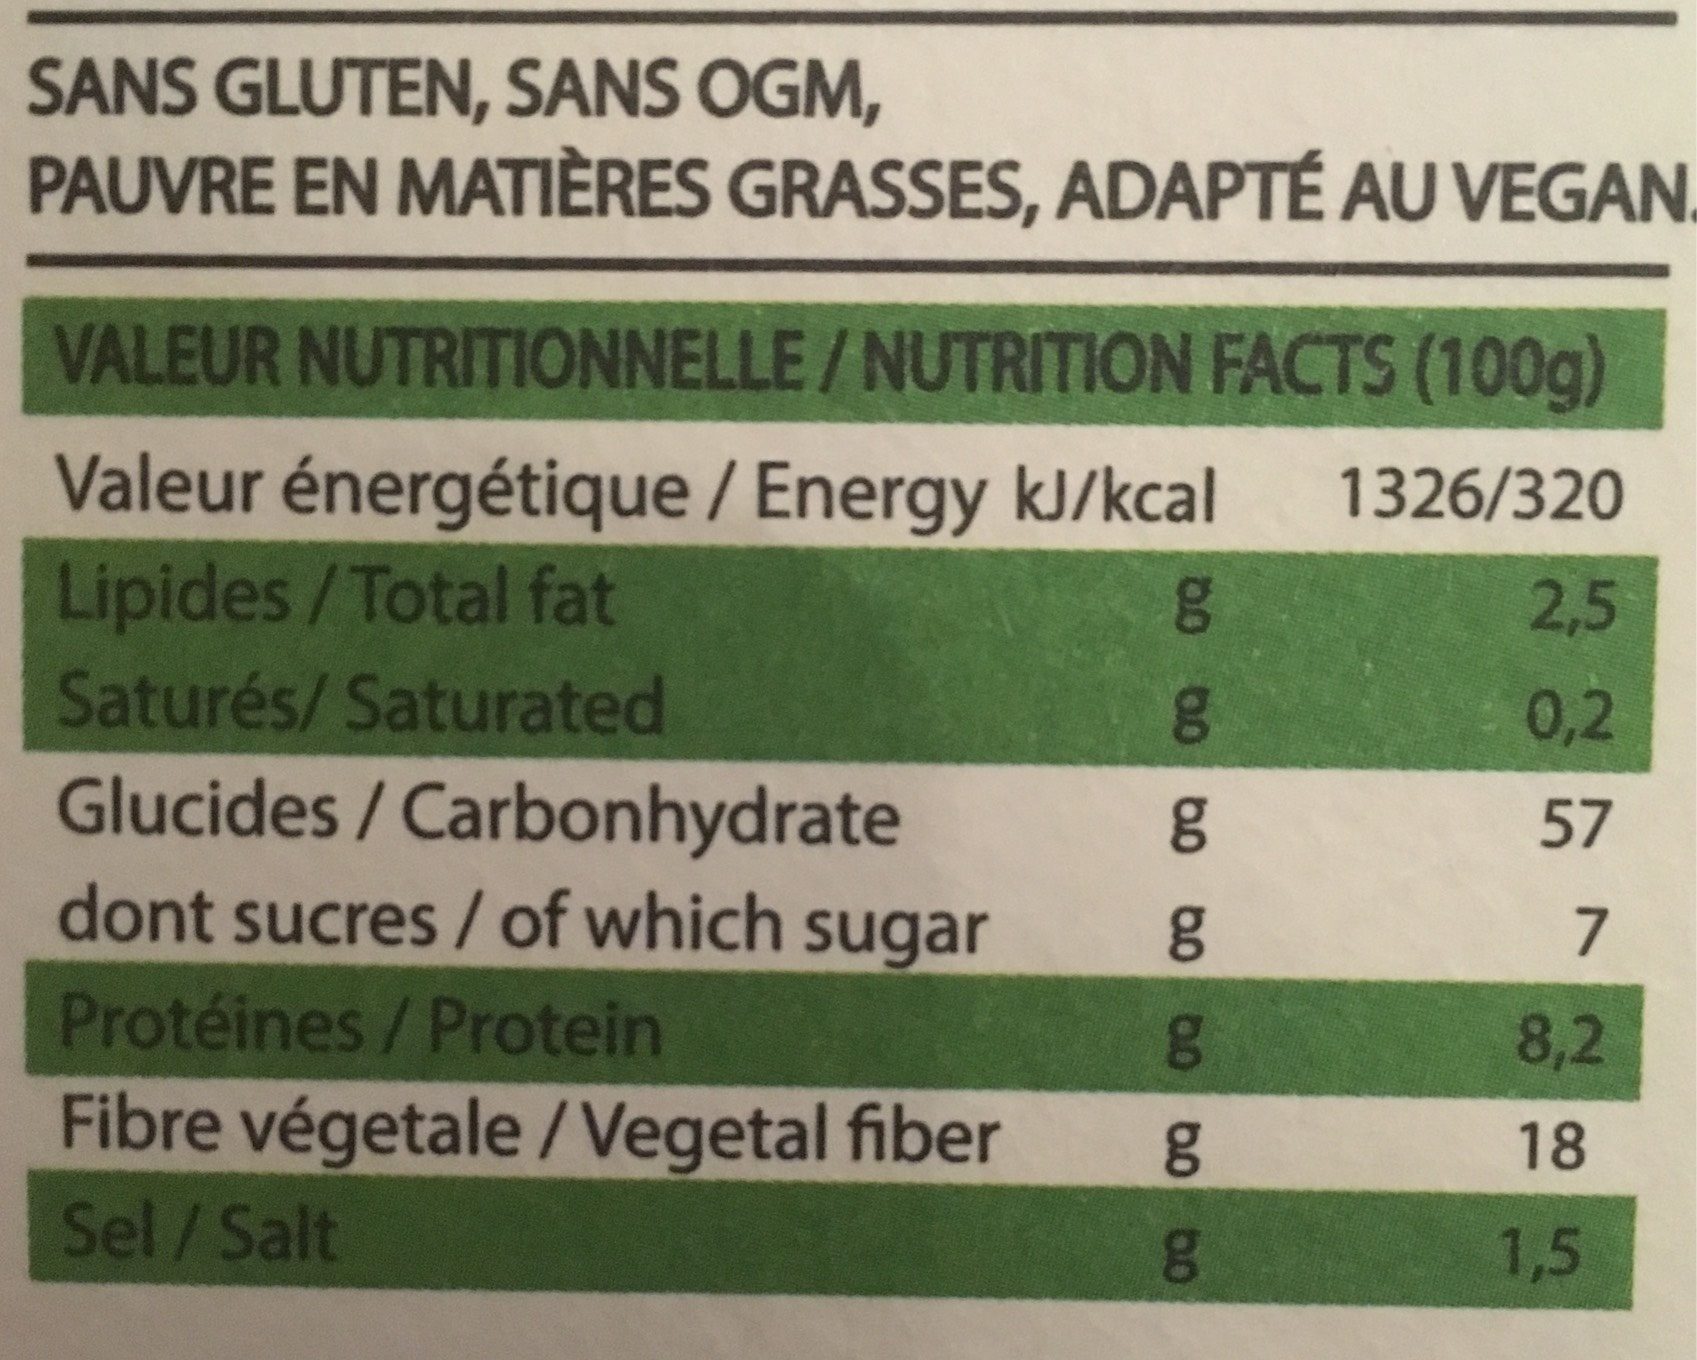 Salade de quinoa courgette citron et menthe - Nutrition facts - fr